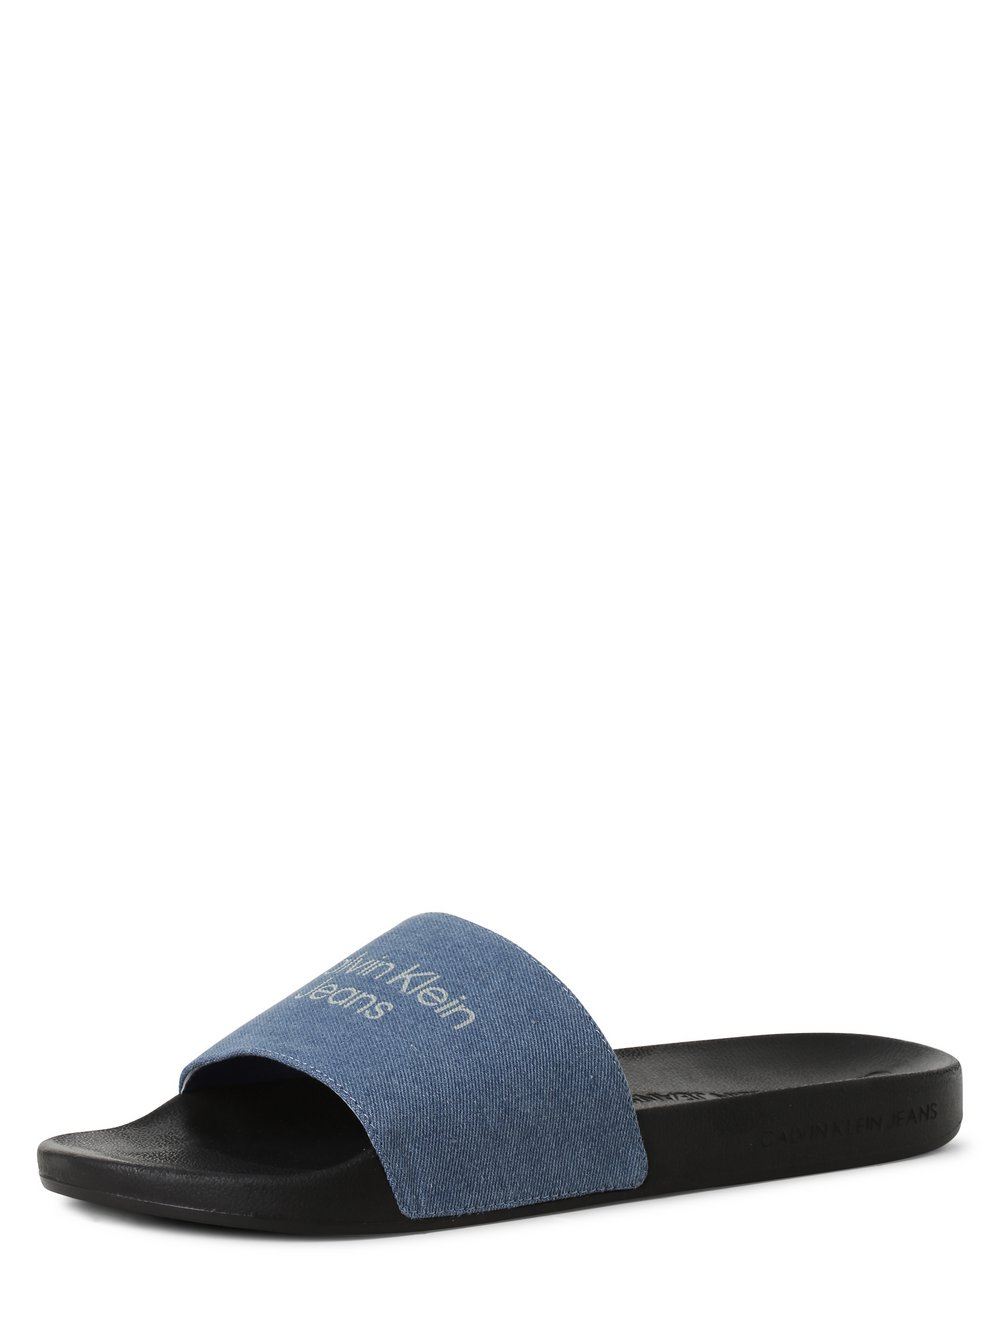 Calvin Klein - Męskie pantofle kąpielowe, niebieski